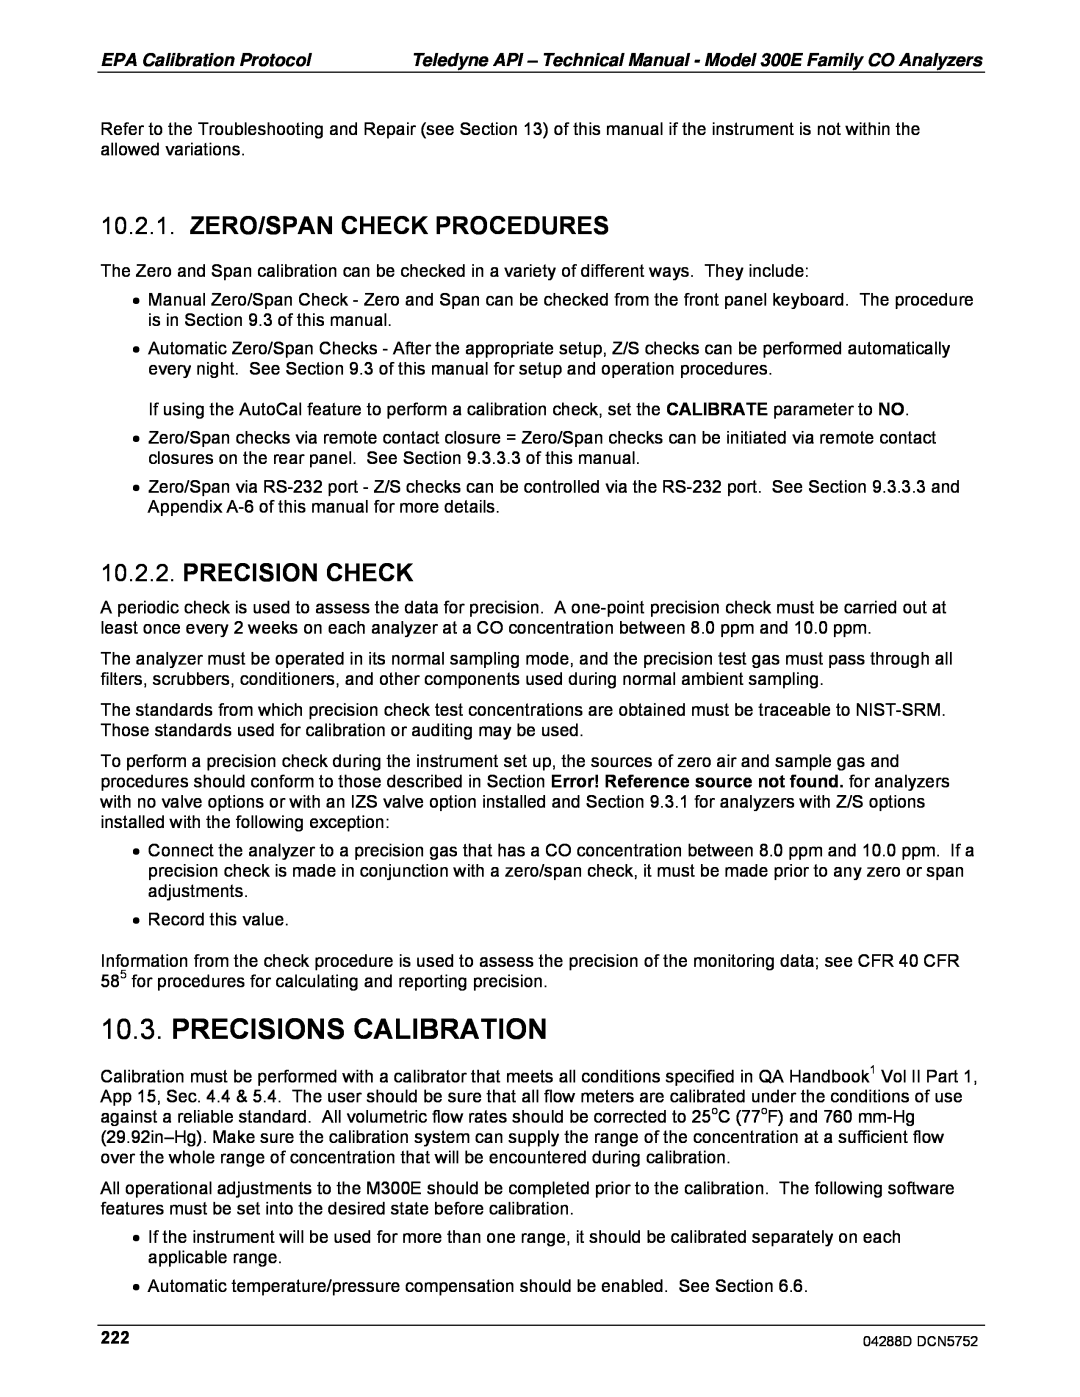 Teledyne M300EM operation manual Precisions Calibration, Zero/Span Check Procedures, Precision Check 